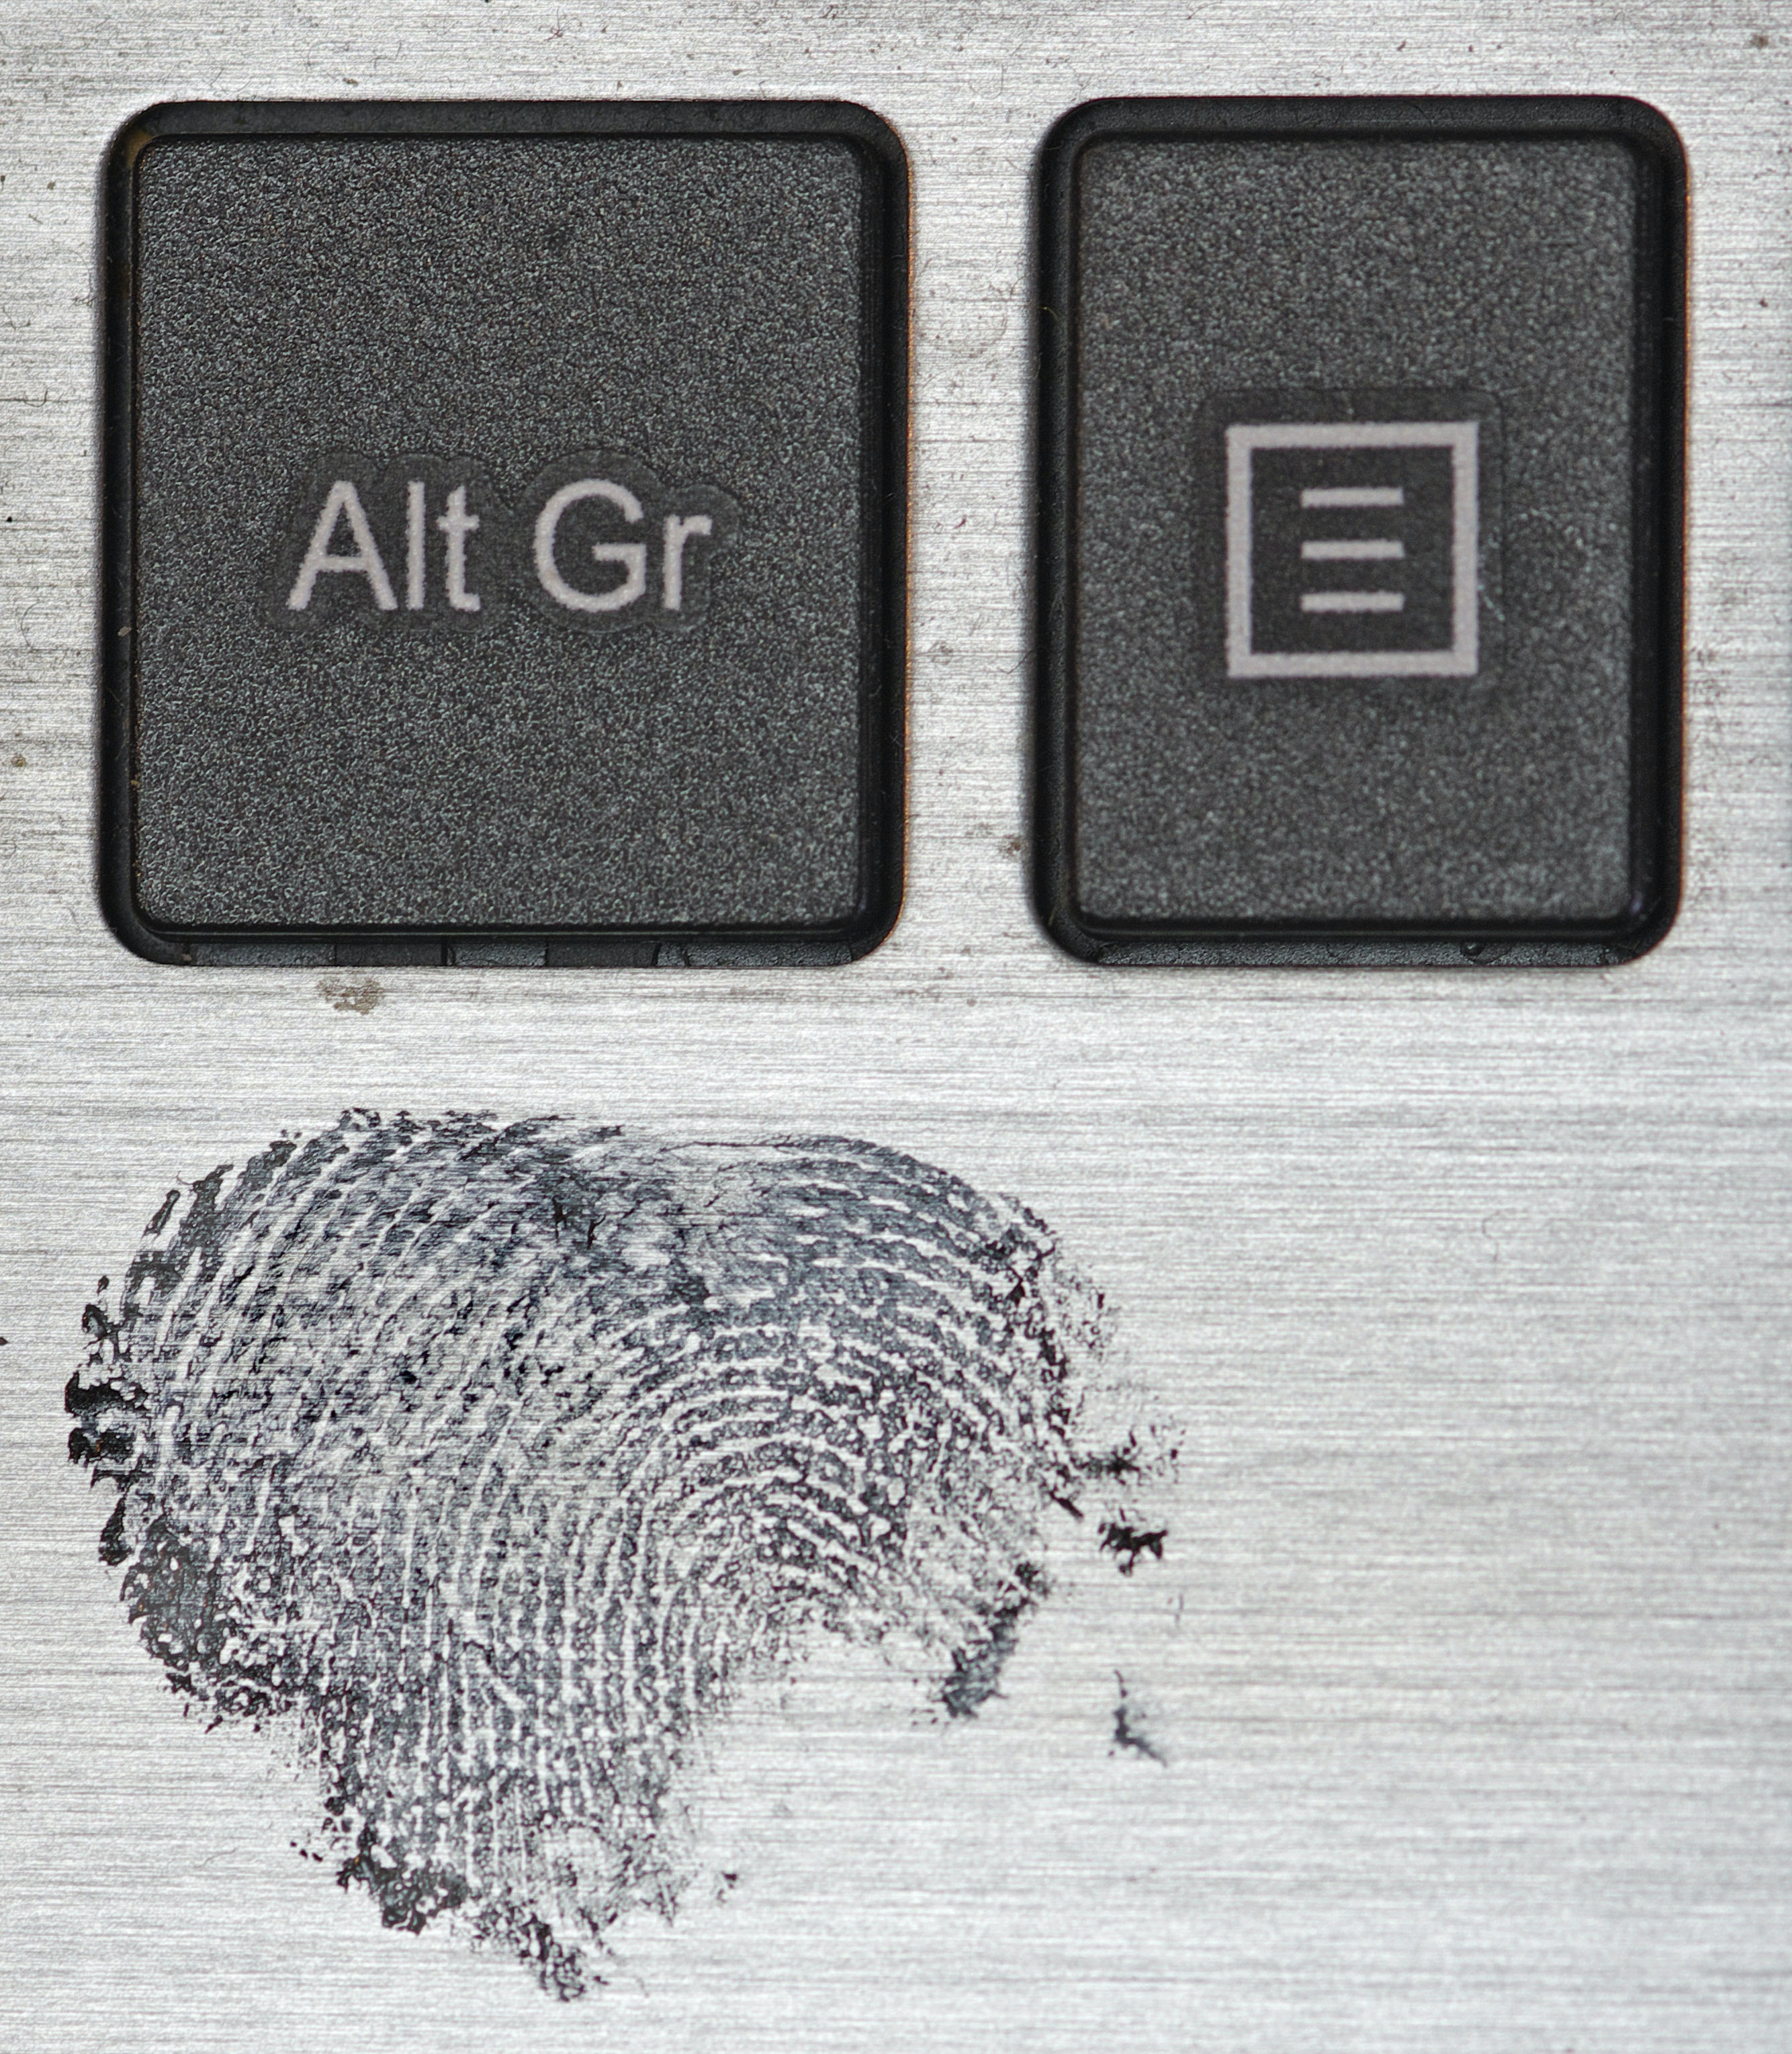 Immo Wegmann "fingerprint on a Labtop surface"